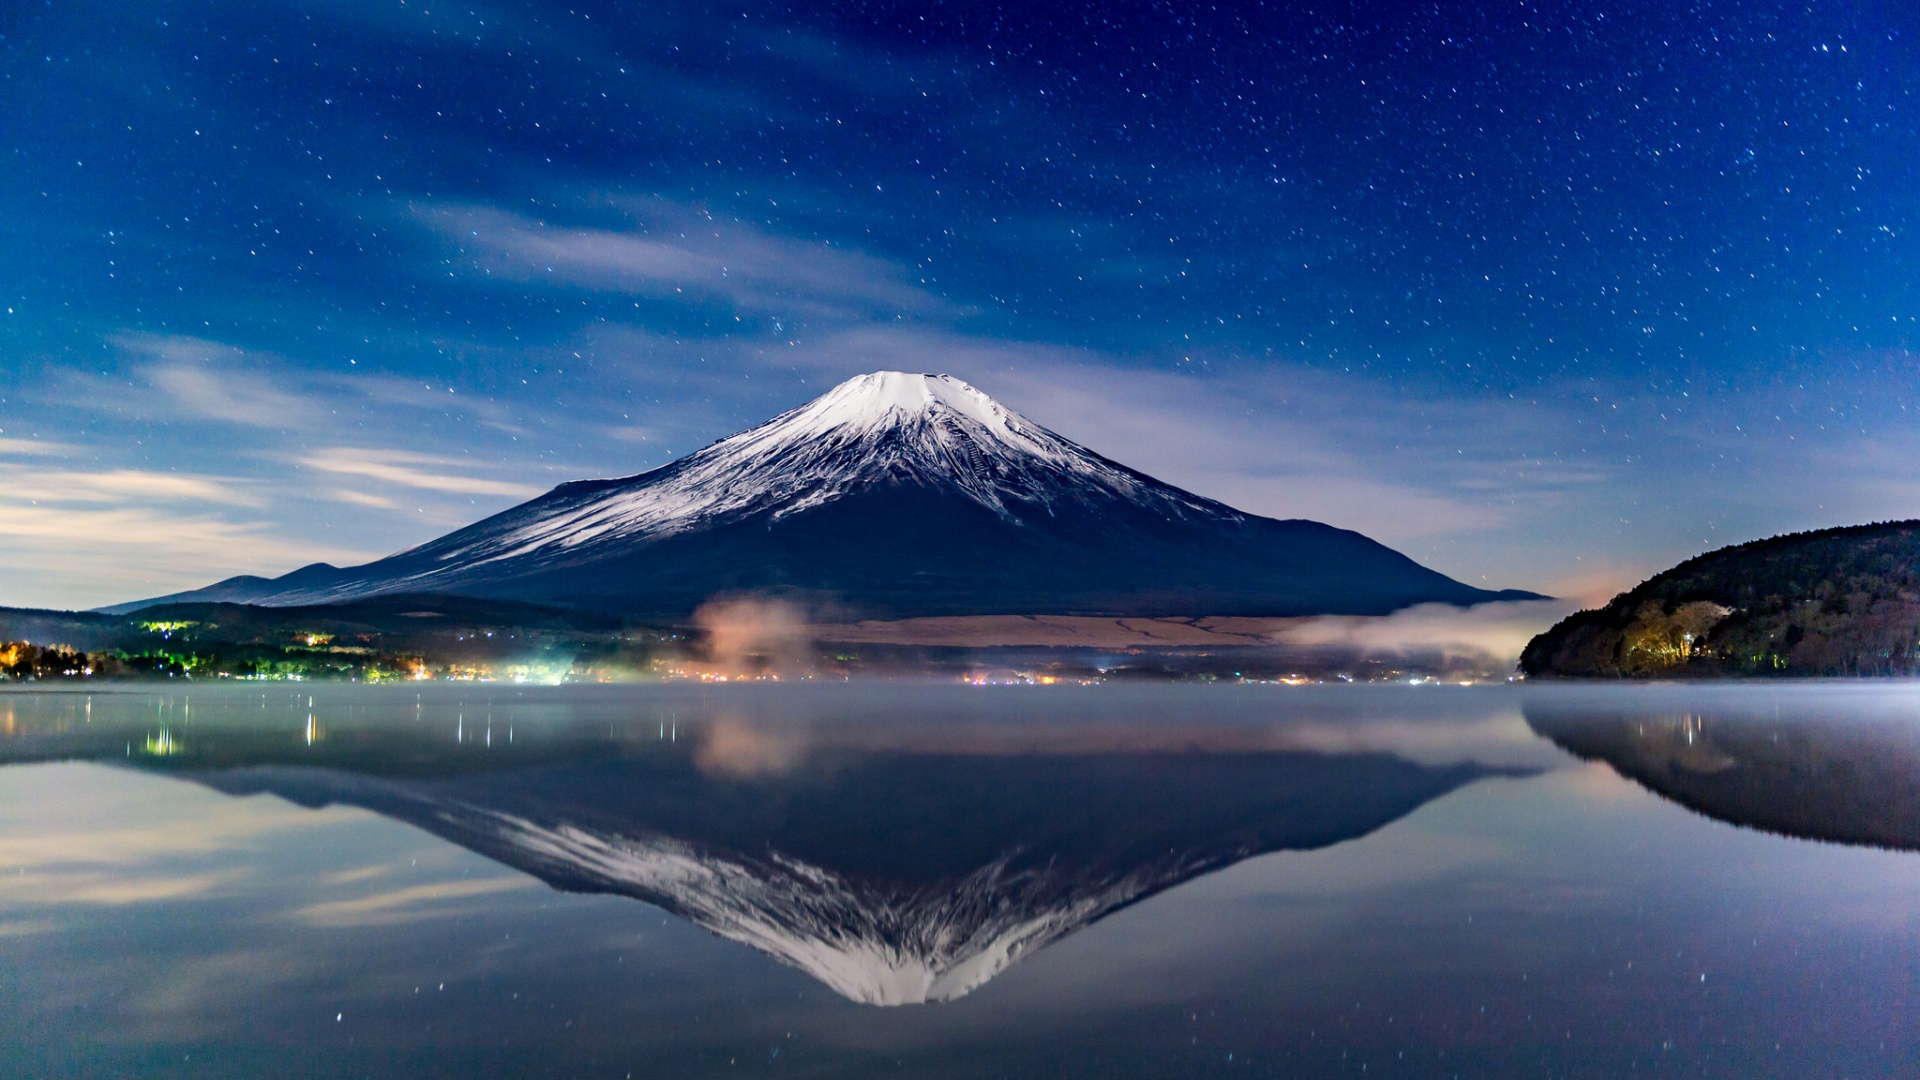 天空 星星 日本富士山风景桌面壁纸